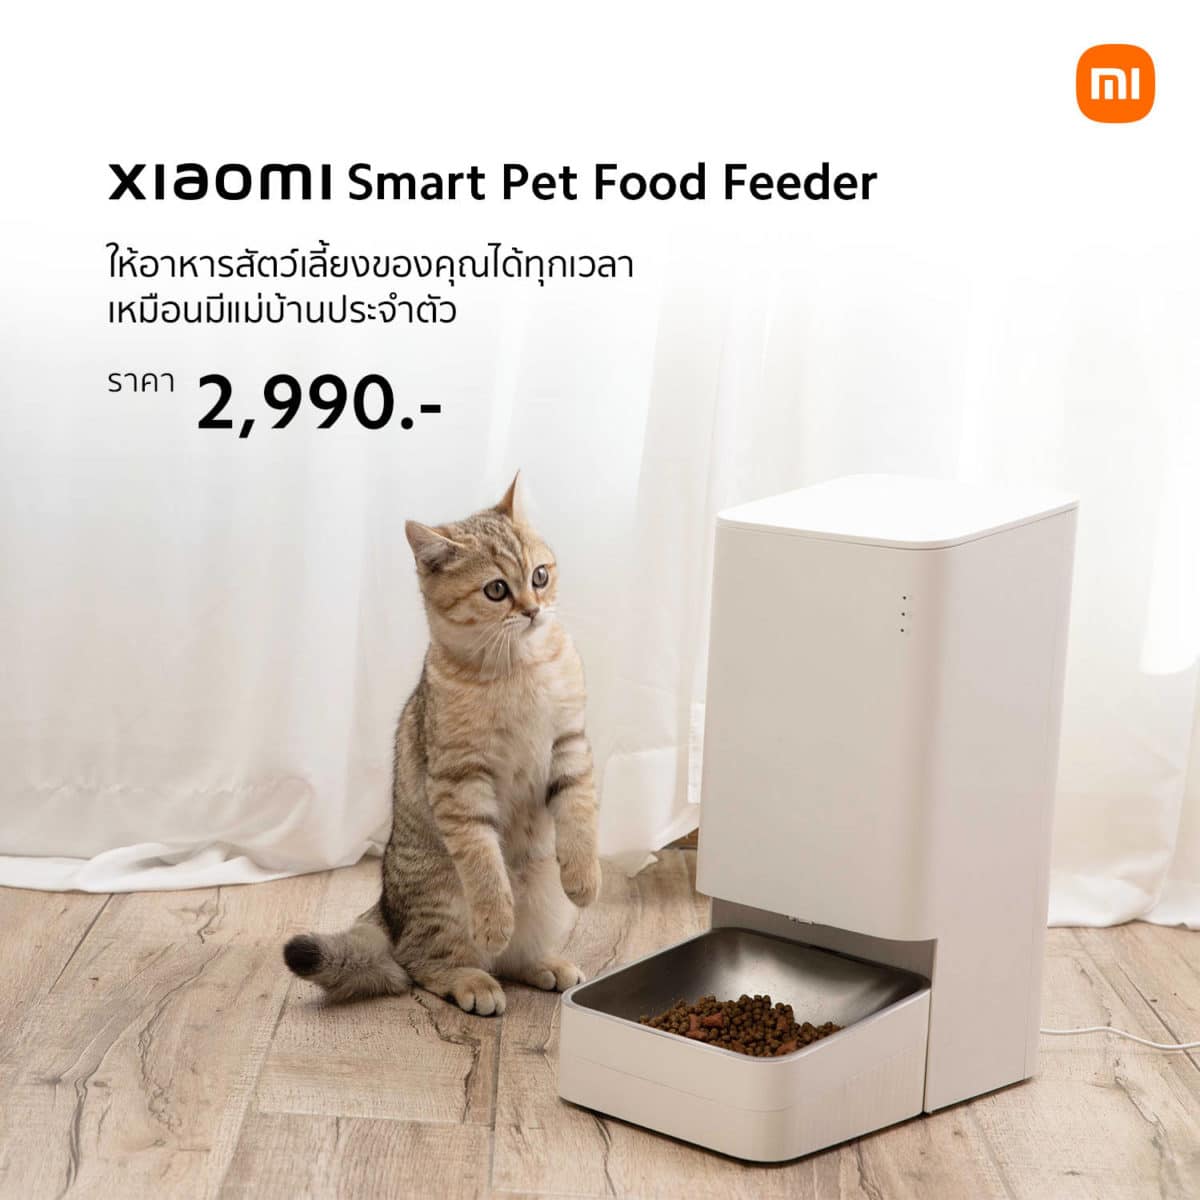 เปิดตัว น้ำพุ Xiaomi Smart Pet Fountain ราคา 1,990 บาท และ เครื่องให้อาหาร Xiaomi Smart Pet Food Feeder ราคา 2,990 บาท